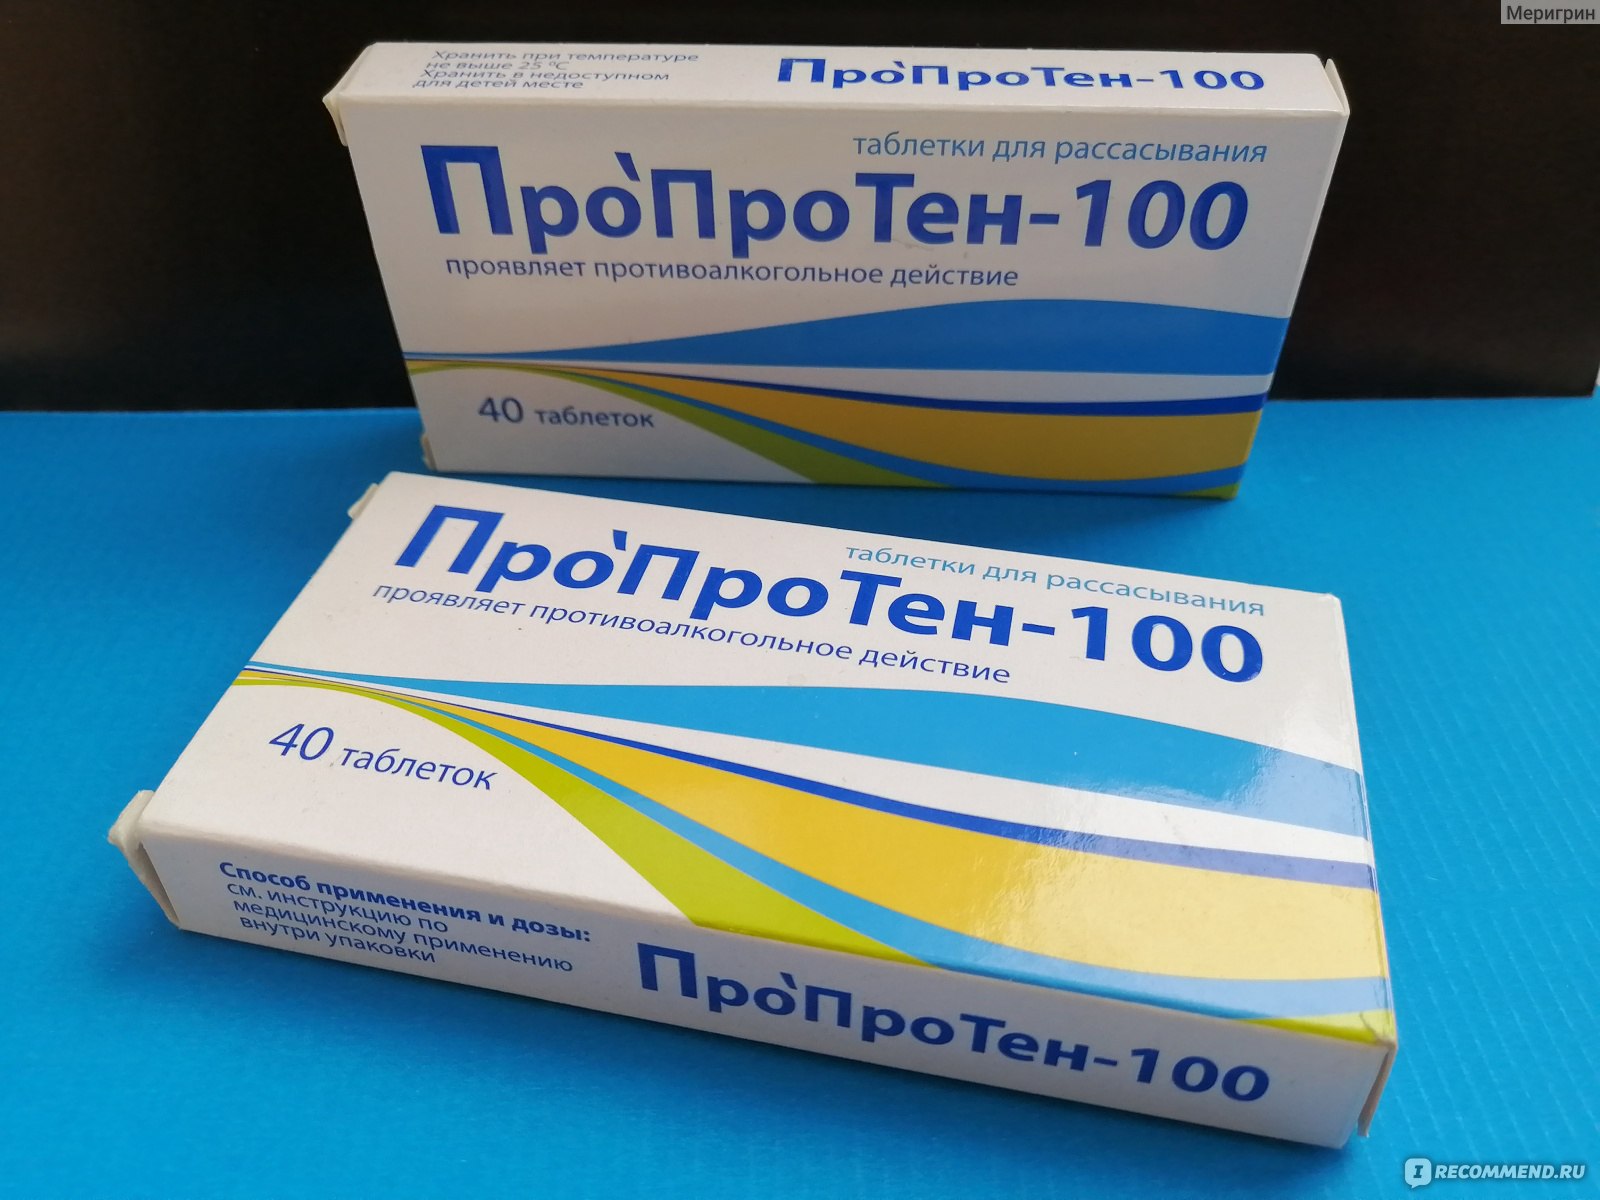 ПроПроТен-100 для лечения алкогольной зависимости, отзыв